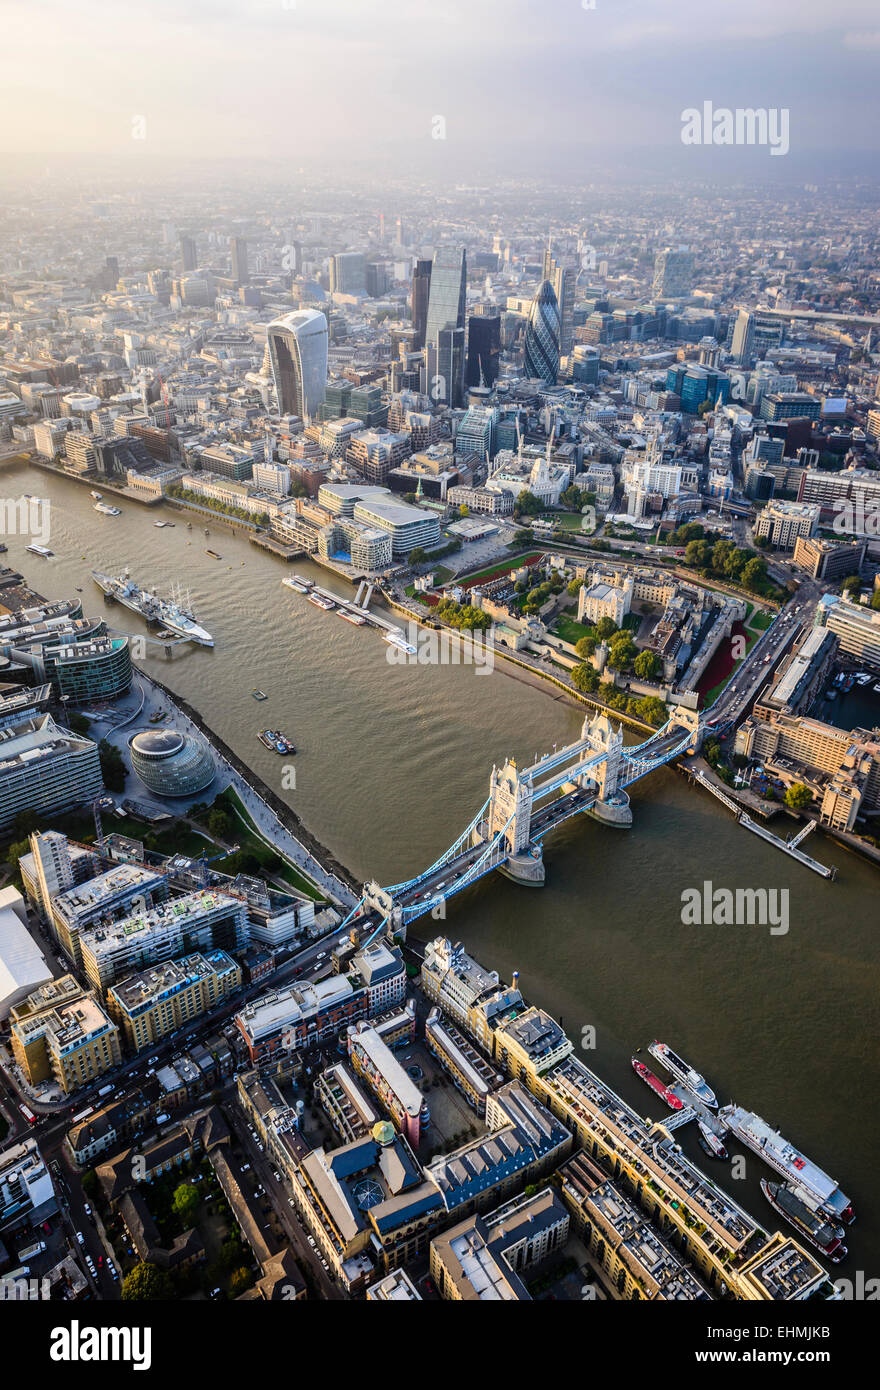 Vue aérienne de la ville de Londres et rivière, Angleterre Banque D'Images